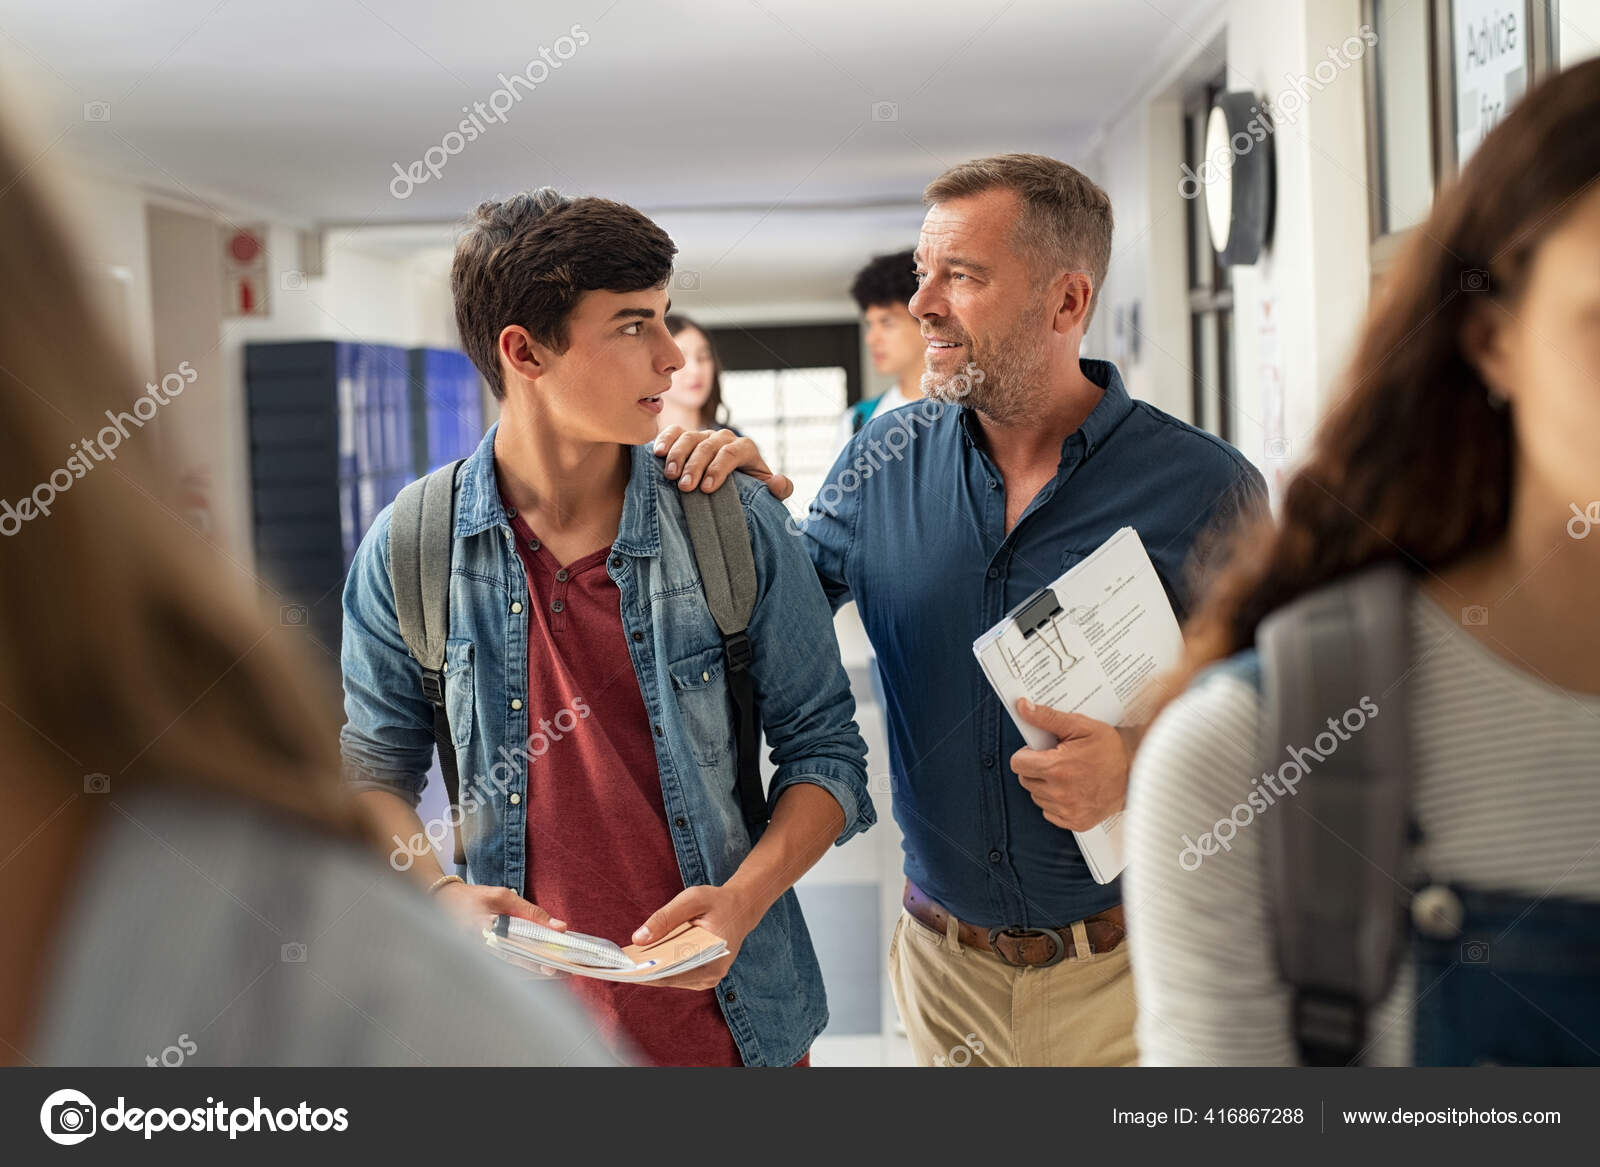 レッスンの最後に廊下で高校生と話す熟女さん 廊下を歩きながらキャンパス内の男学生との会話の中で上級教授 高校教師は試験を開催し 試験後に若い男を奨励するために話す ストック写真 C Ridofranz